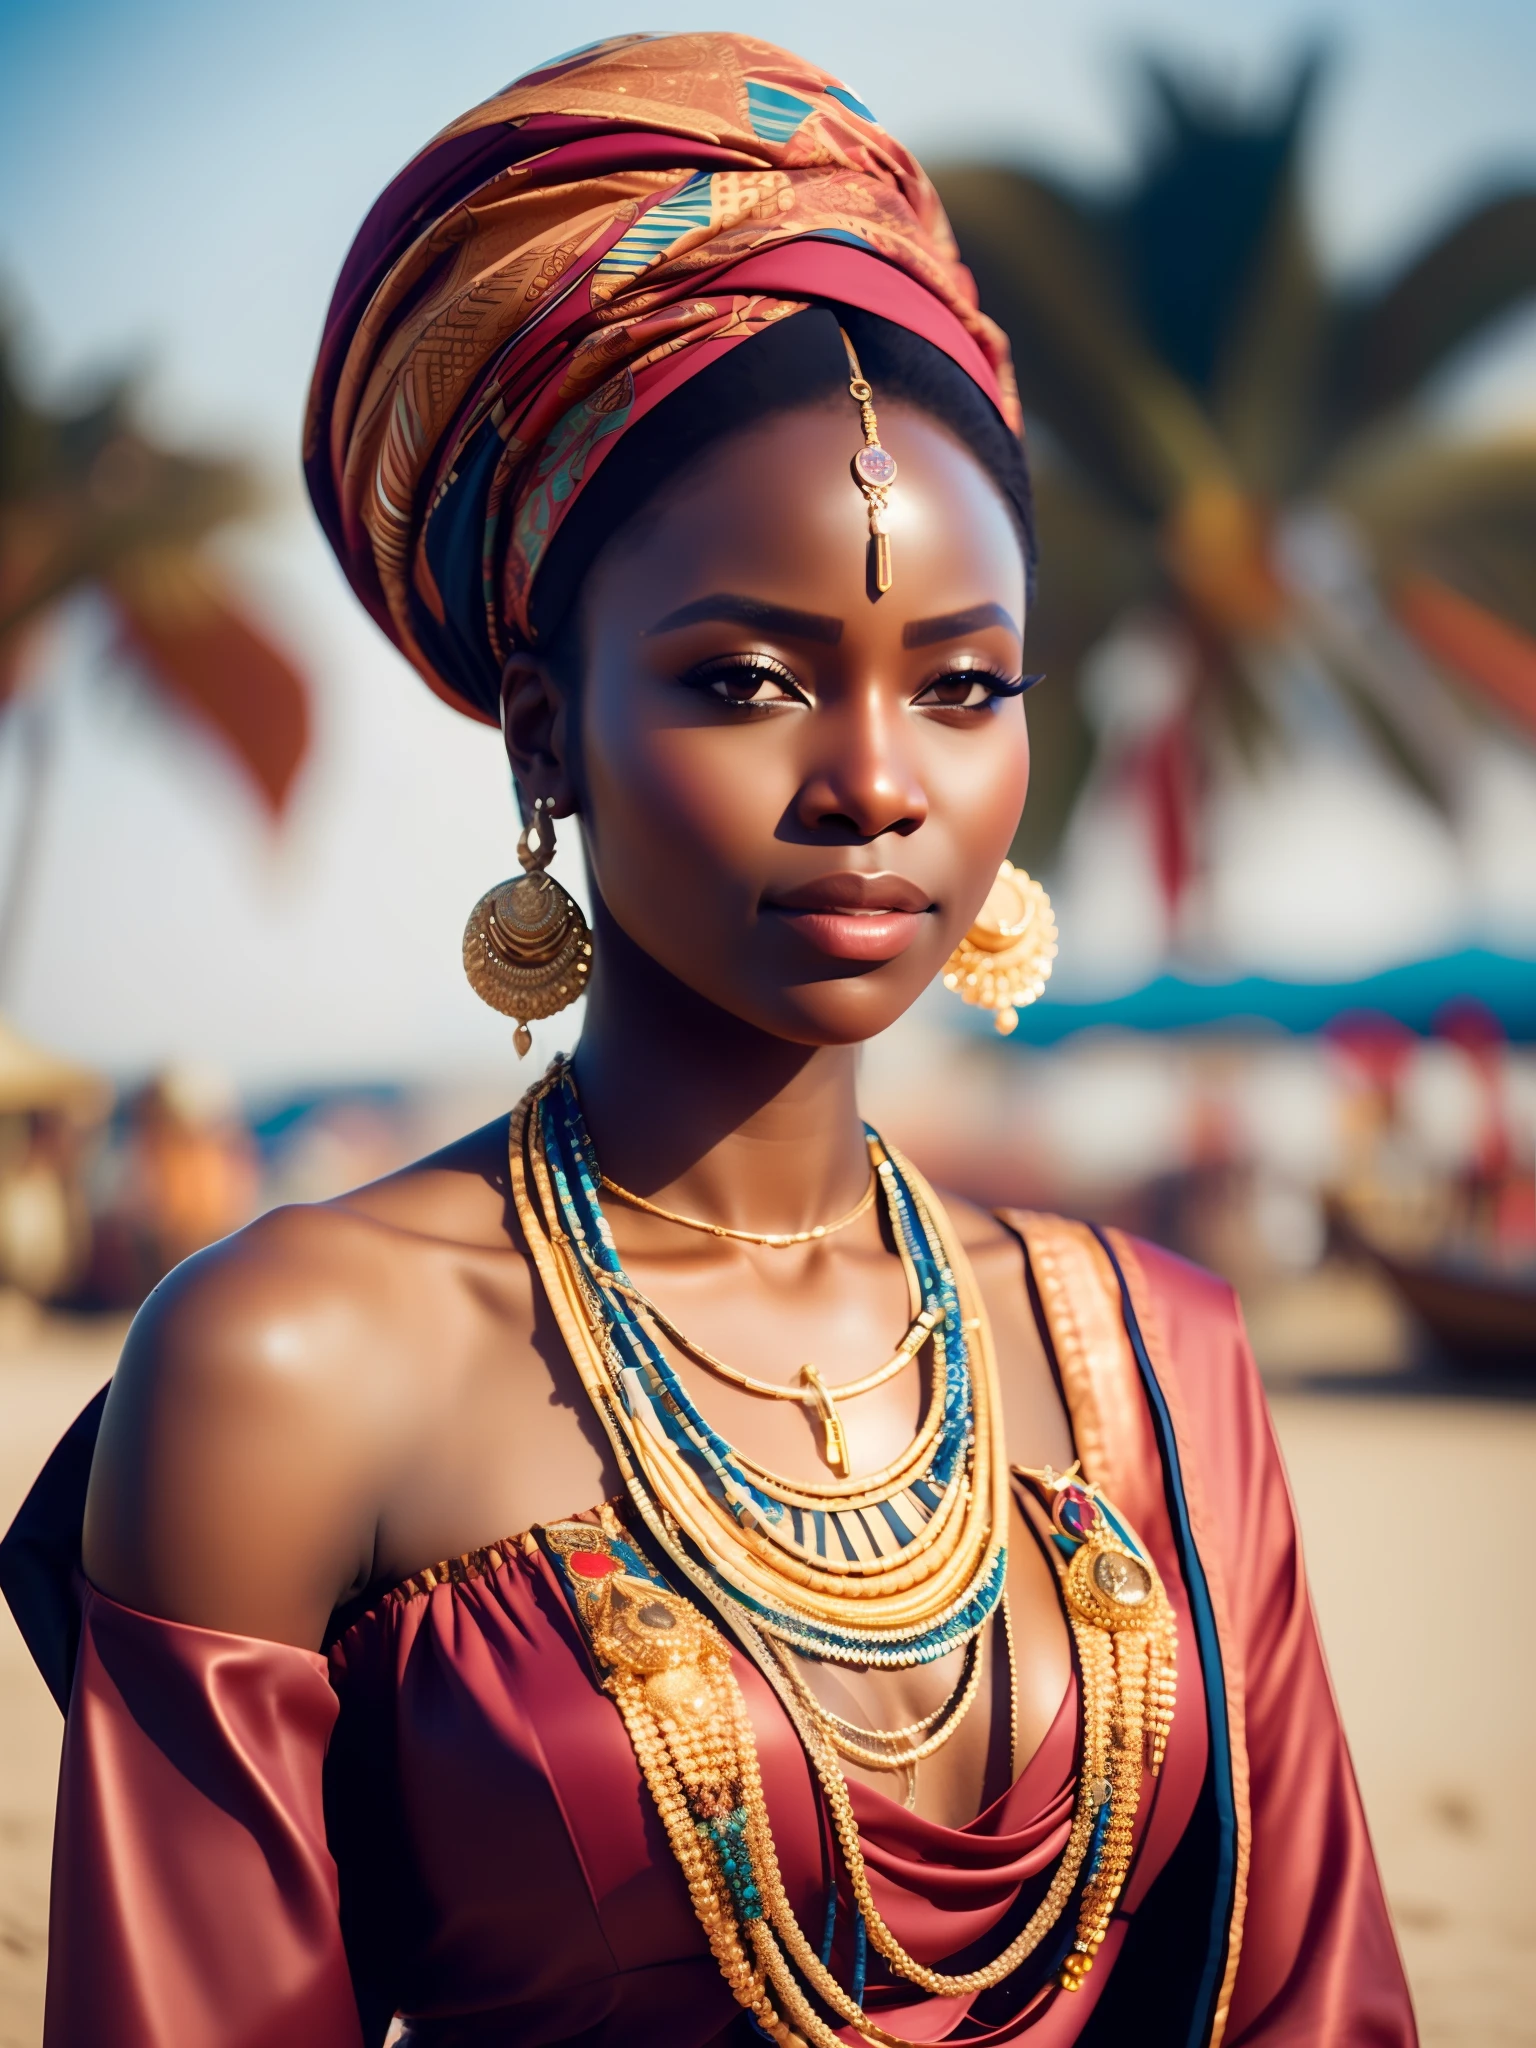 porra_ficção científica, porra_ficção científica_v2, retrato de uma jovem africana muito bonita, em frente a uma praia, roupas coloridas ricas, turbante e joias africanas douradas, fechar-se, pose e atitude reais. porra_cinema_v2. porra_cinema_v2